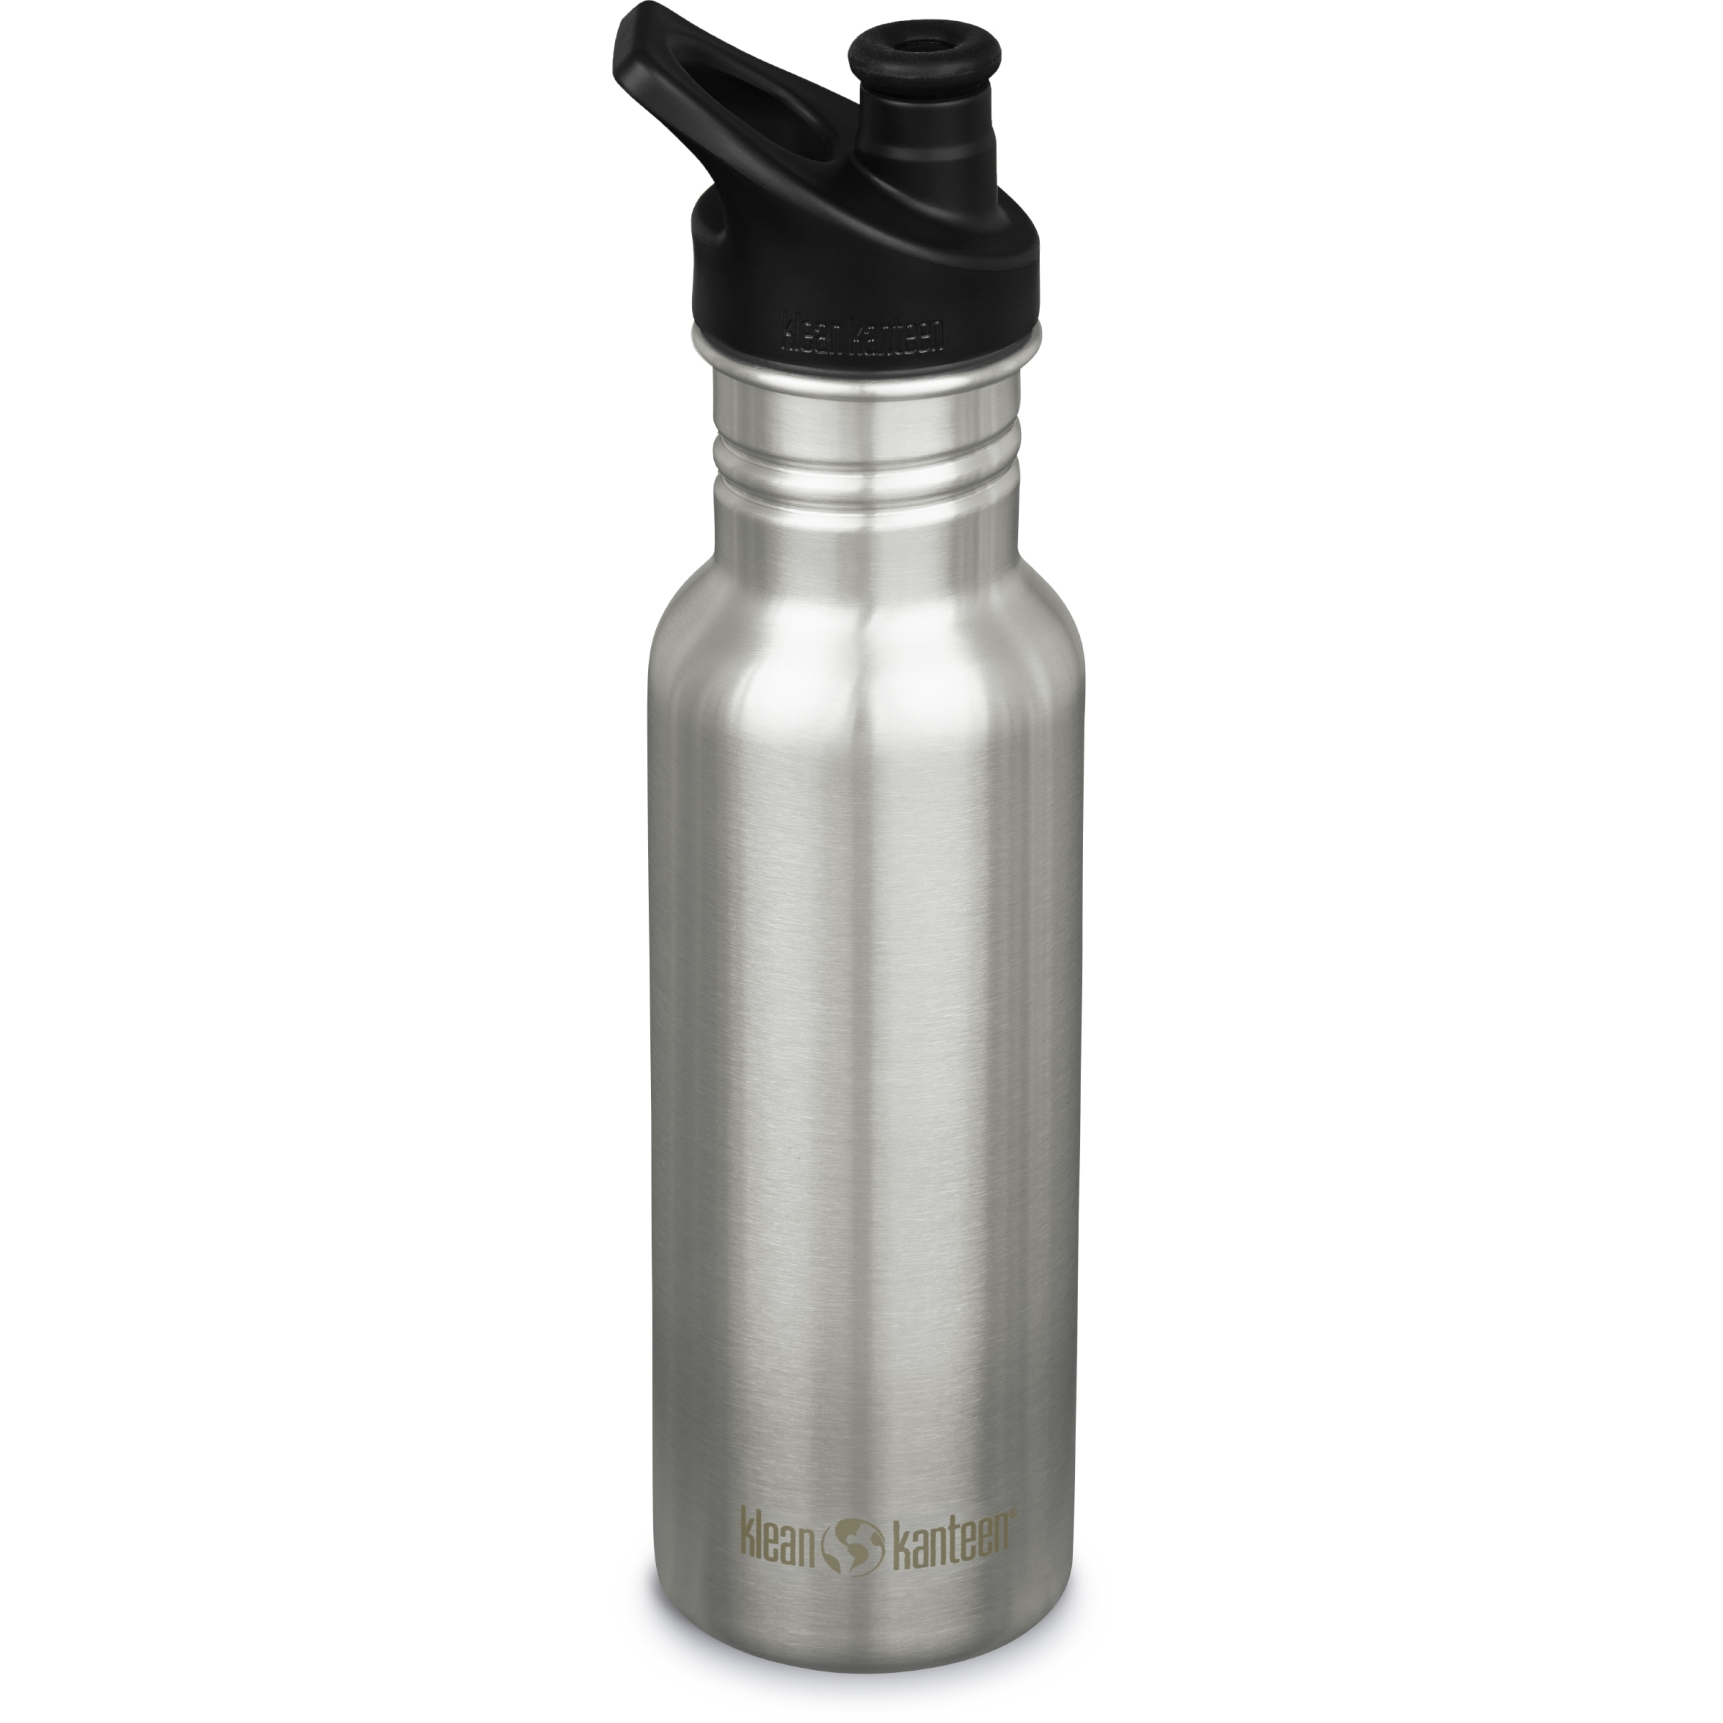 Produktbild von Klean Kanteen Classic Trinkflasche mit Sport Cap 532 ml - brushed stainless